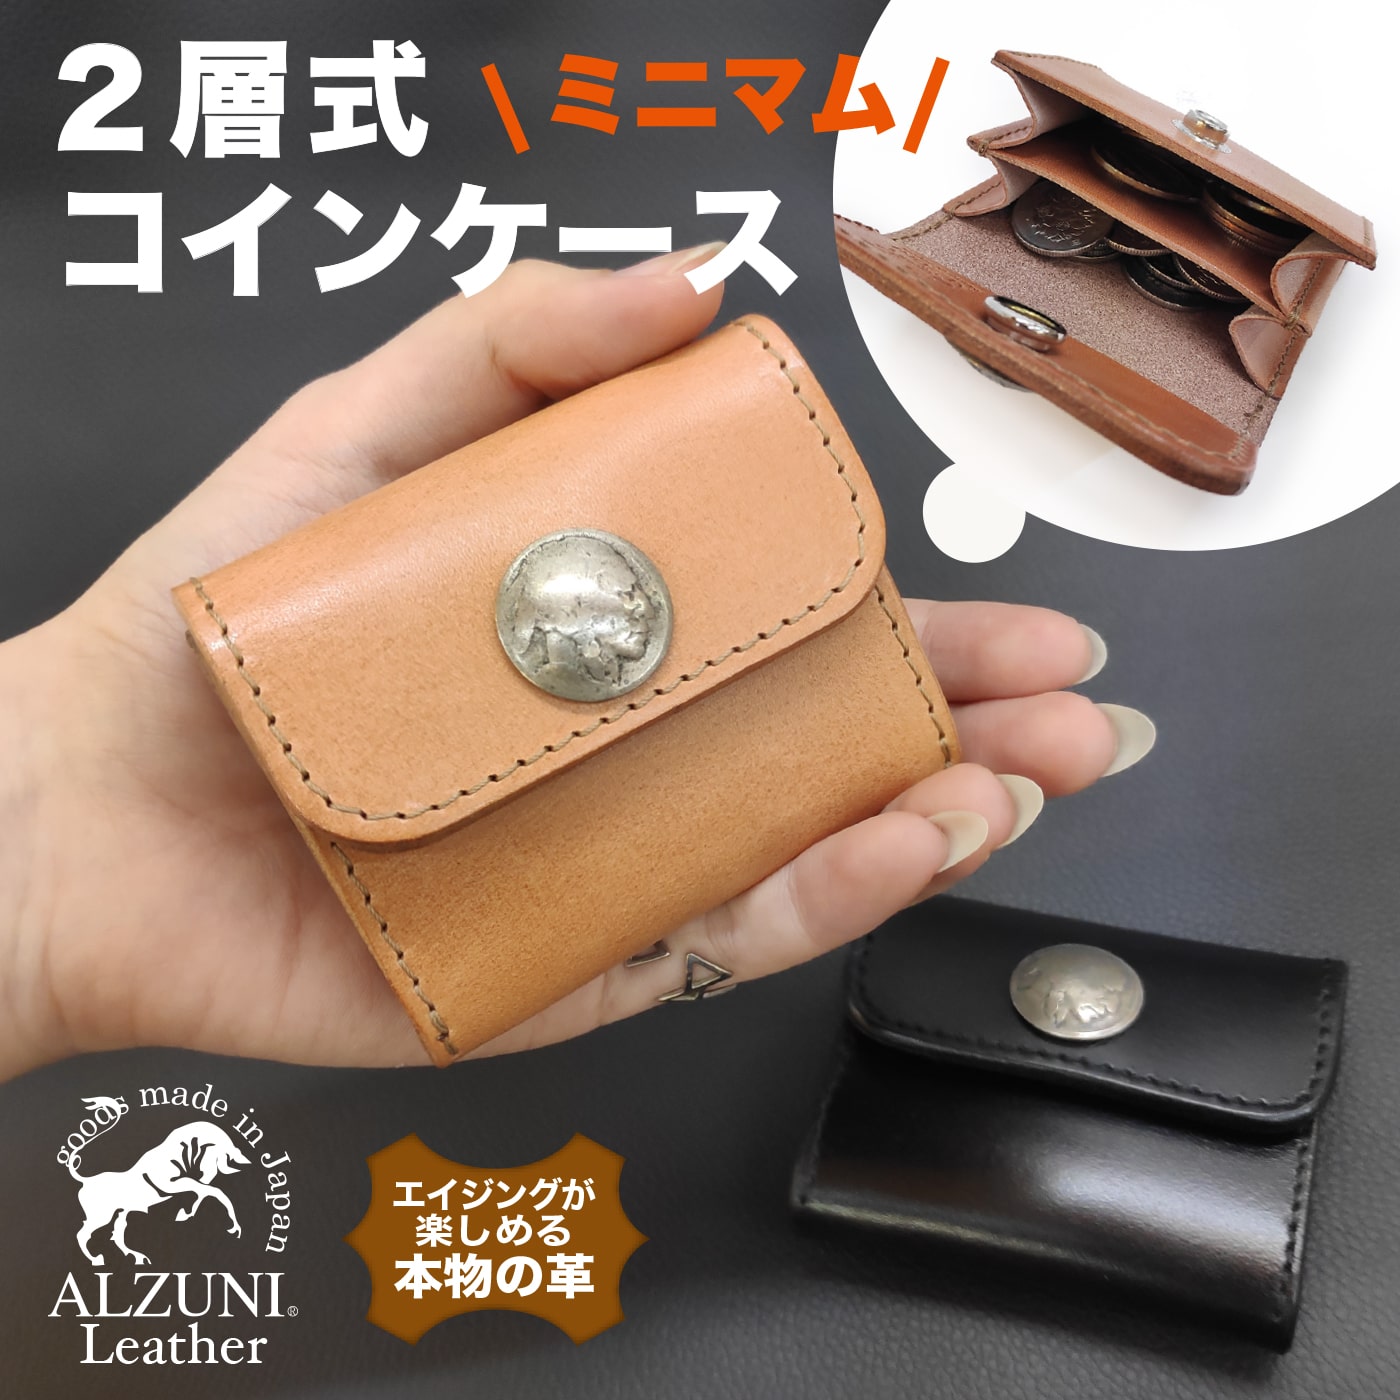 日本製 ALZUNI アルズニ ライターケース